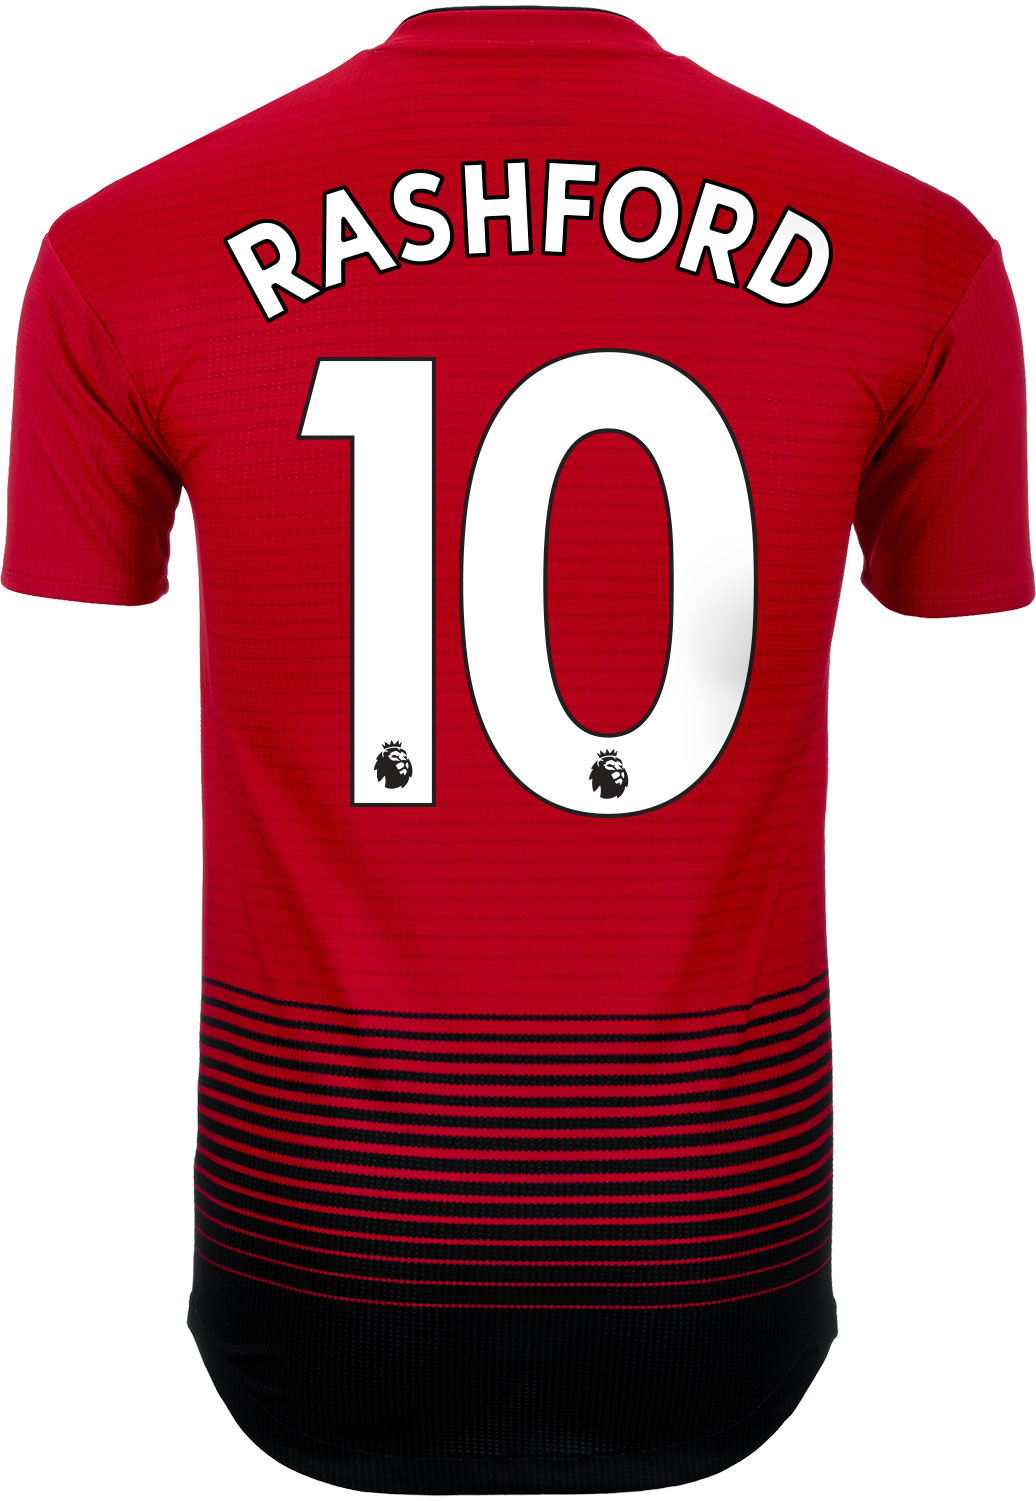 rashford jersey